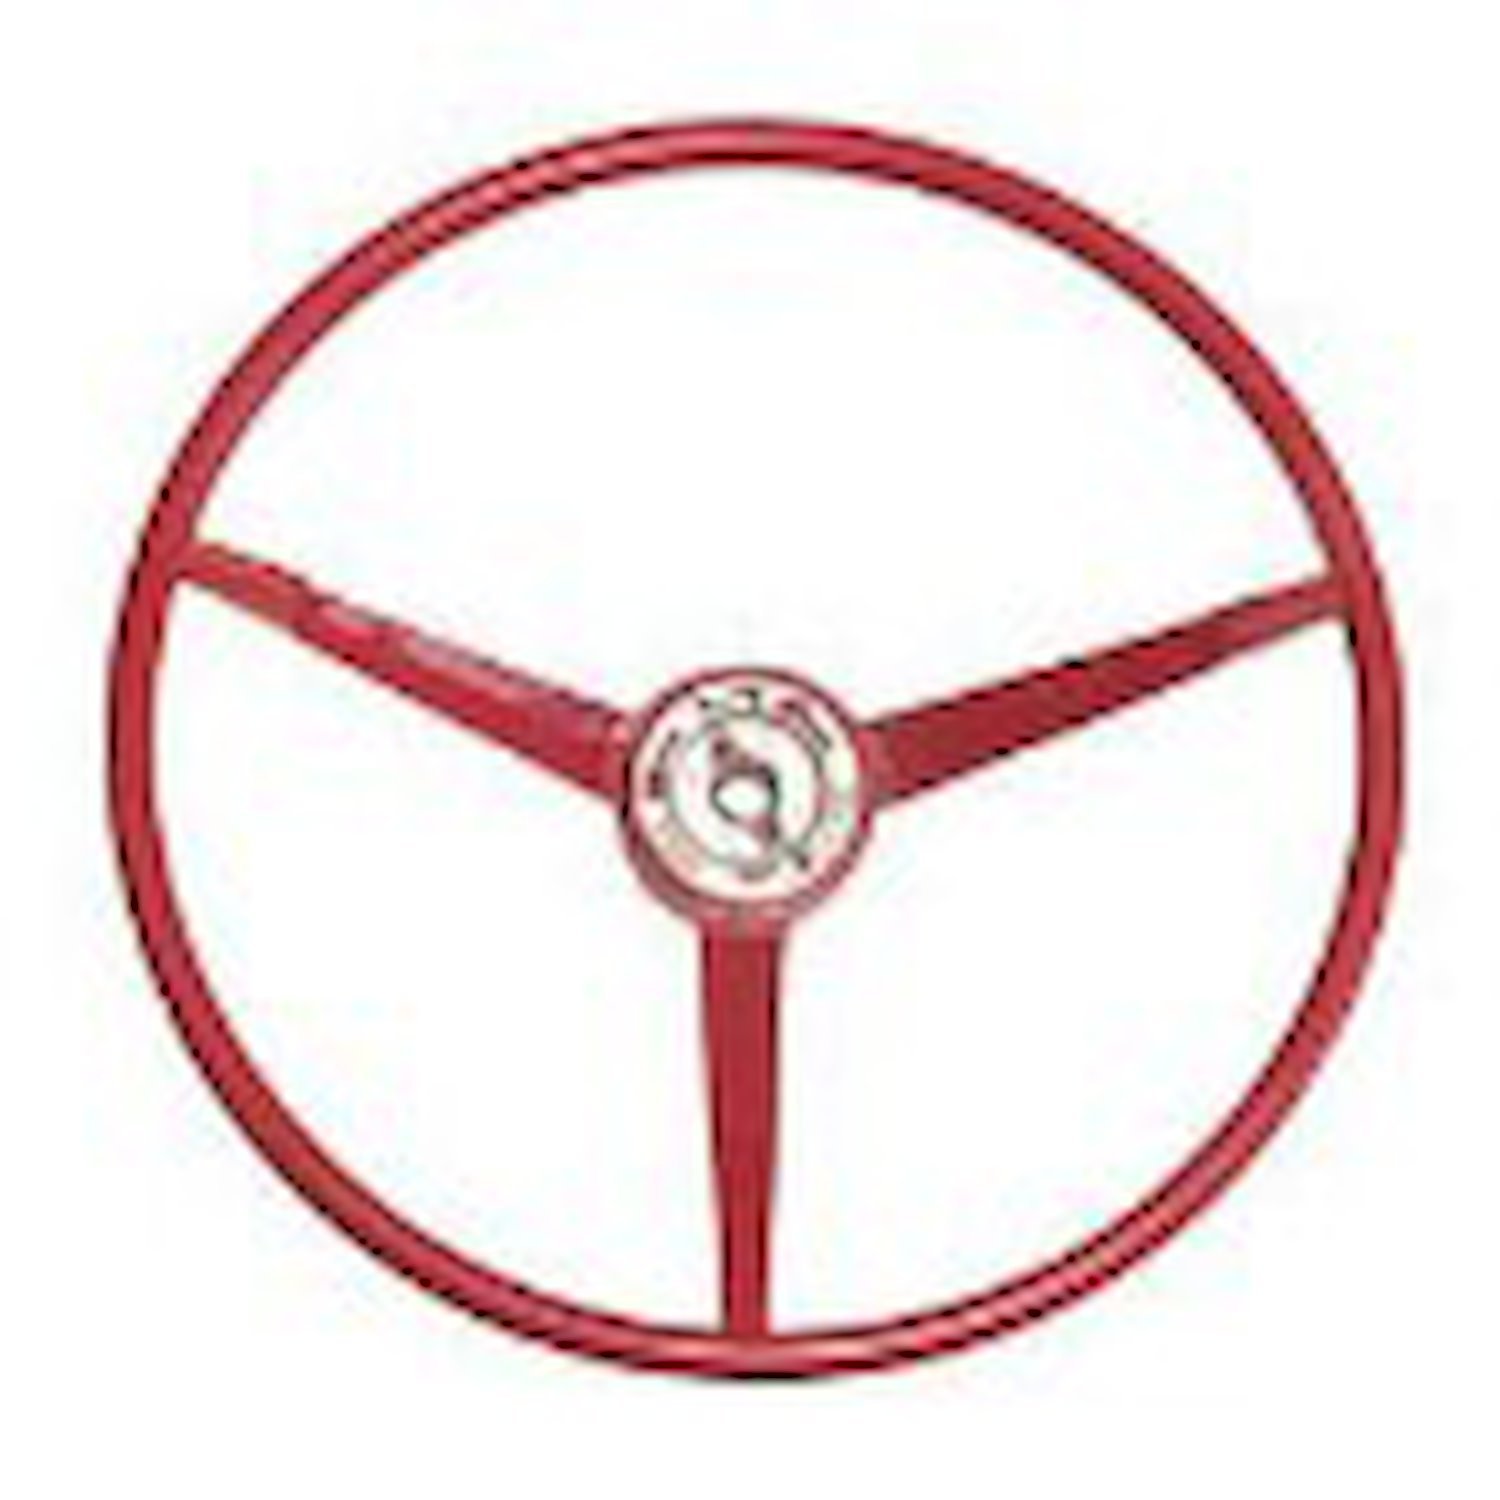 Standard Steering Wheel 1965 Ford Mustang